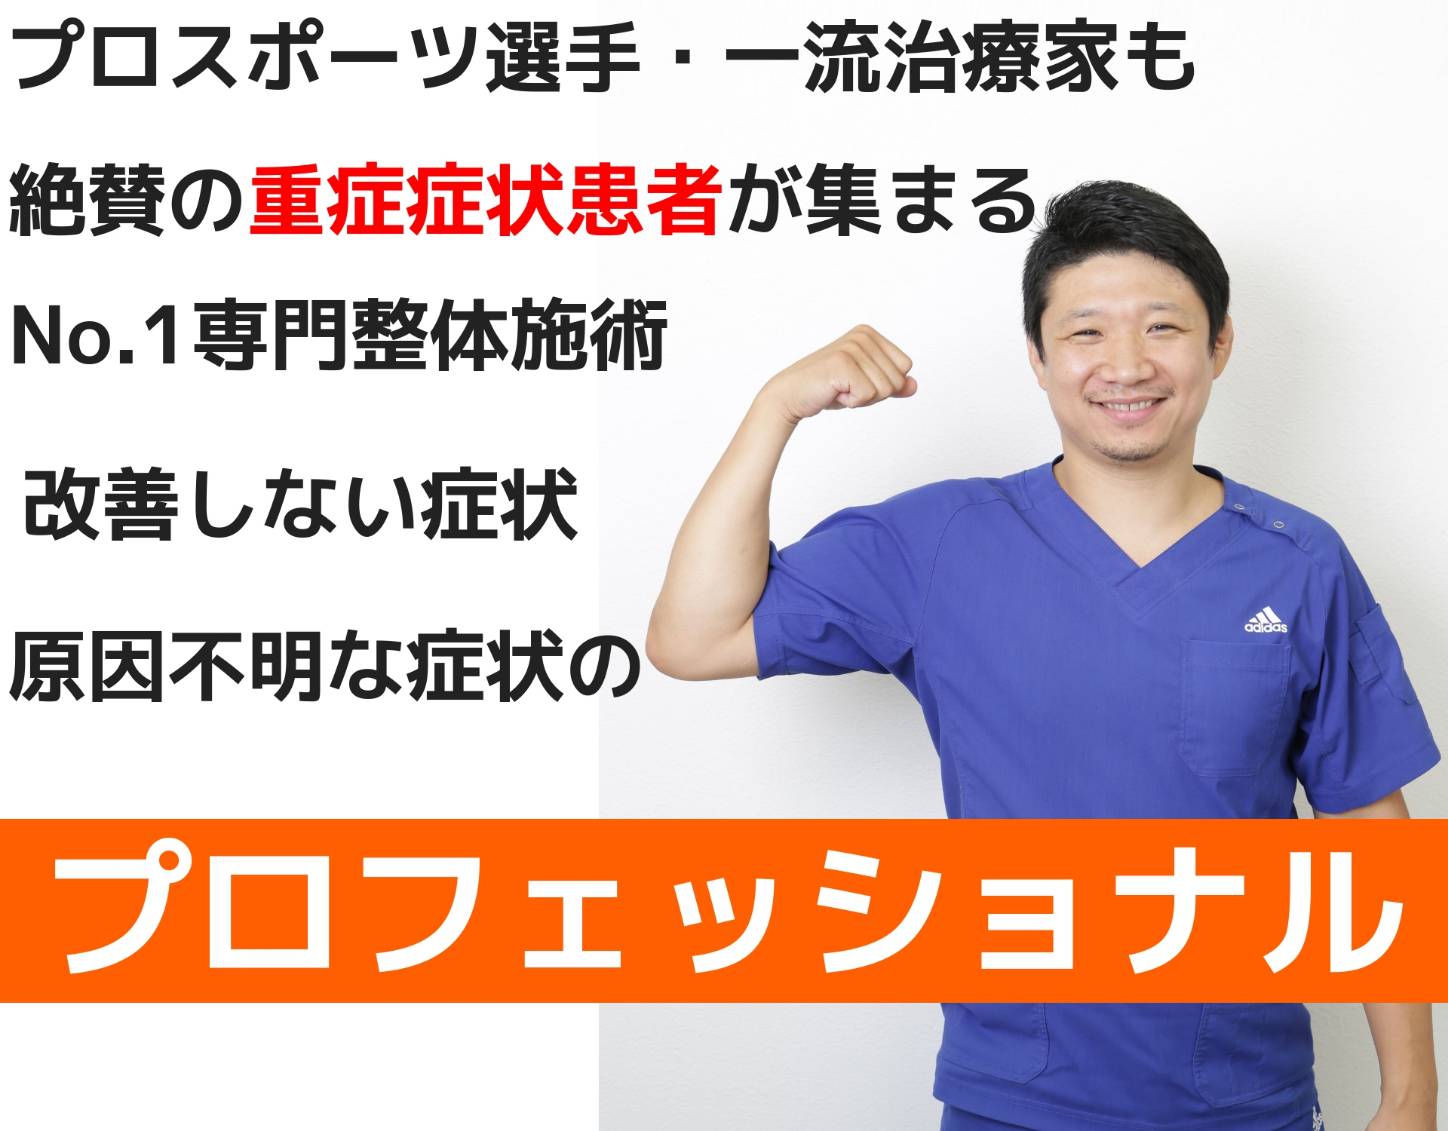 大阪で病院でも治らない手術が必要な重症の腰痛ヘルニア・膝痛・変形性股関節症・頚椎症・五十肩・手足のシビレ専門整体治療院ミツ阿倍野